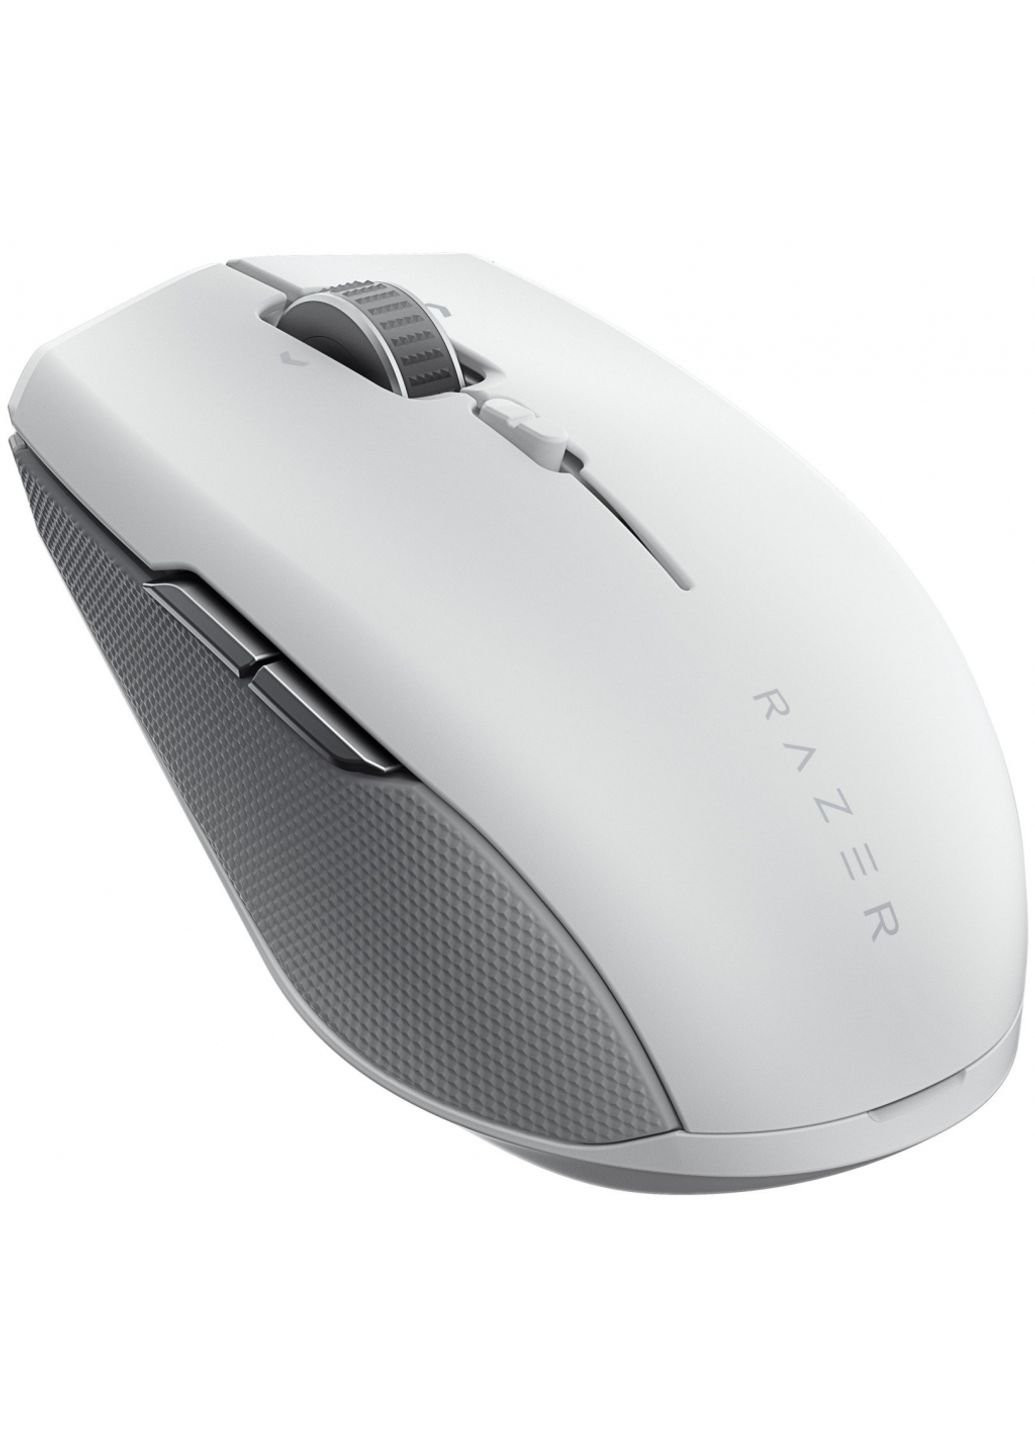 Мышка Pro Click mini White/Gray (RZ01-03990100-R3G1) Razer (253547431)